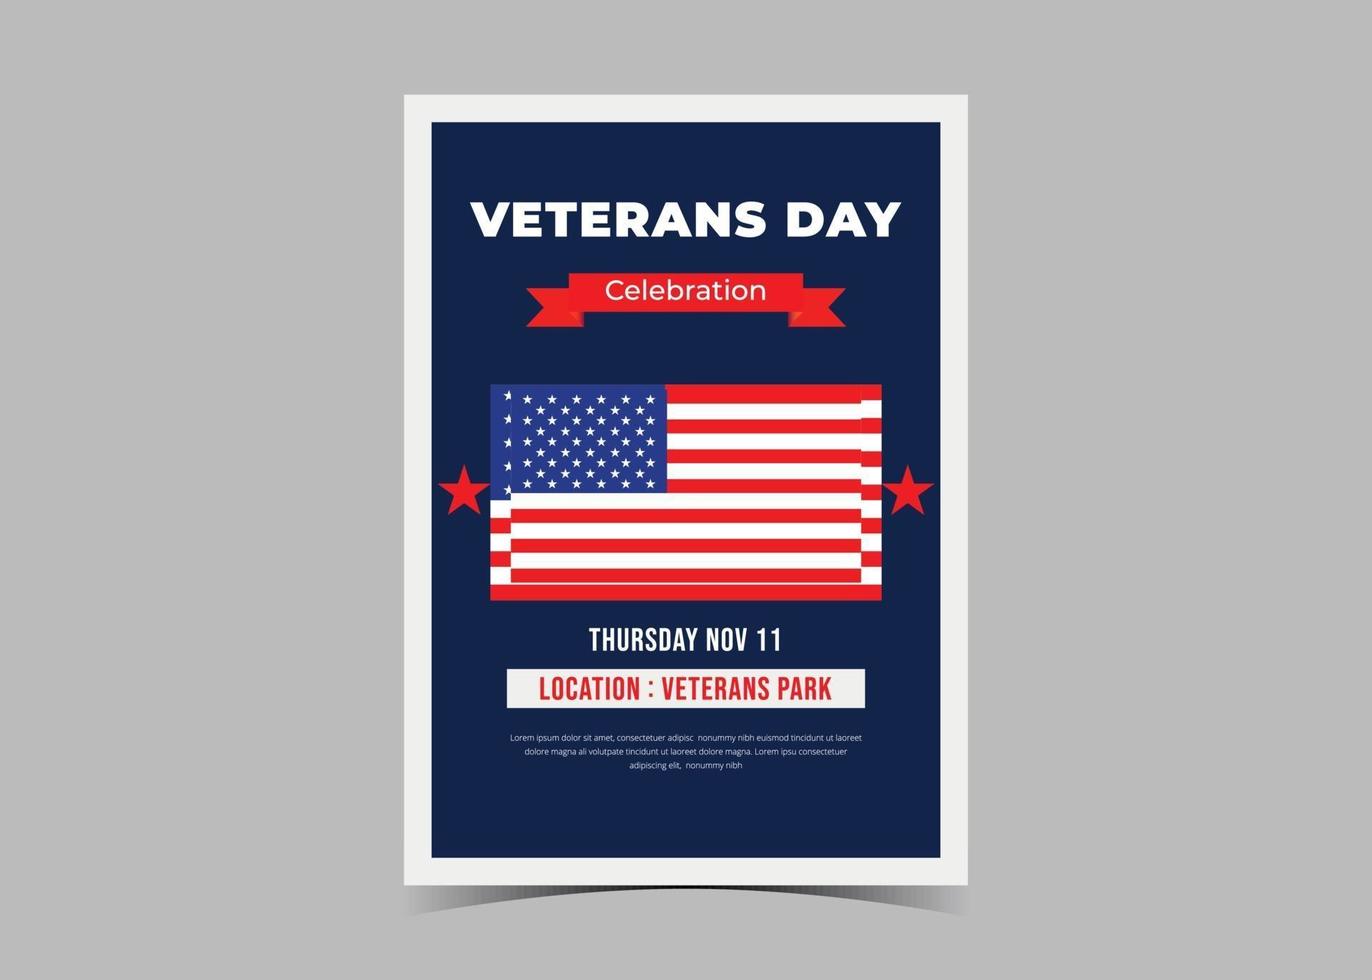 veteranen dag flyer ontwerp. flyer voor de viering van de Amerikaanse veteranendag vector